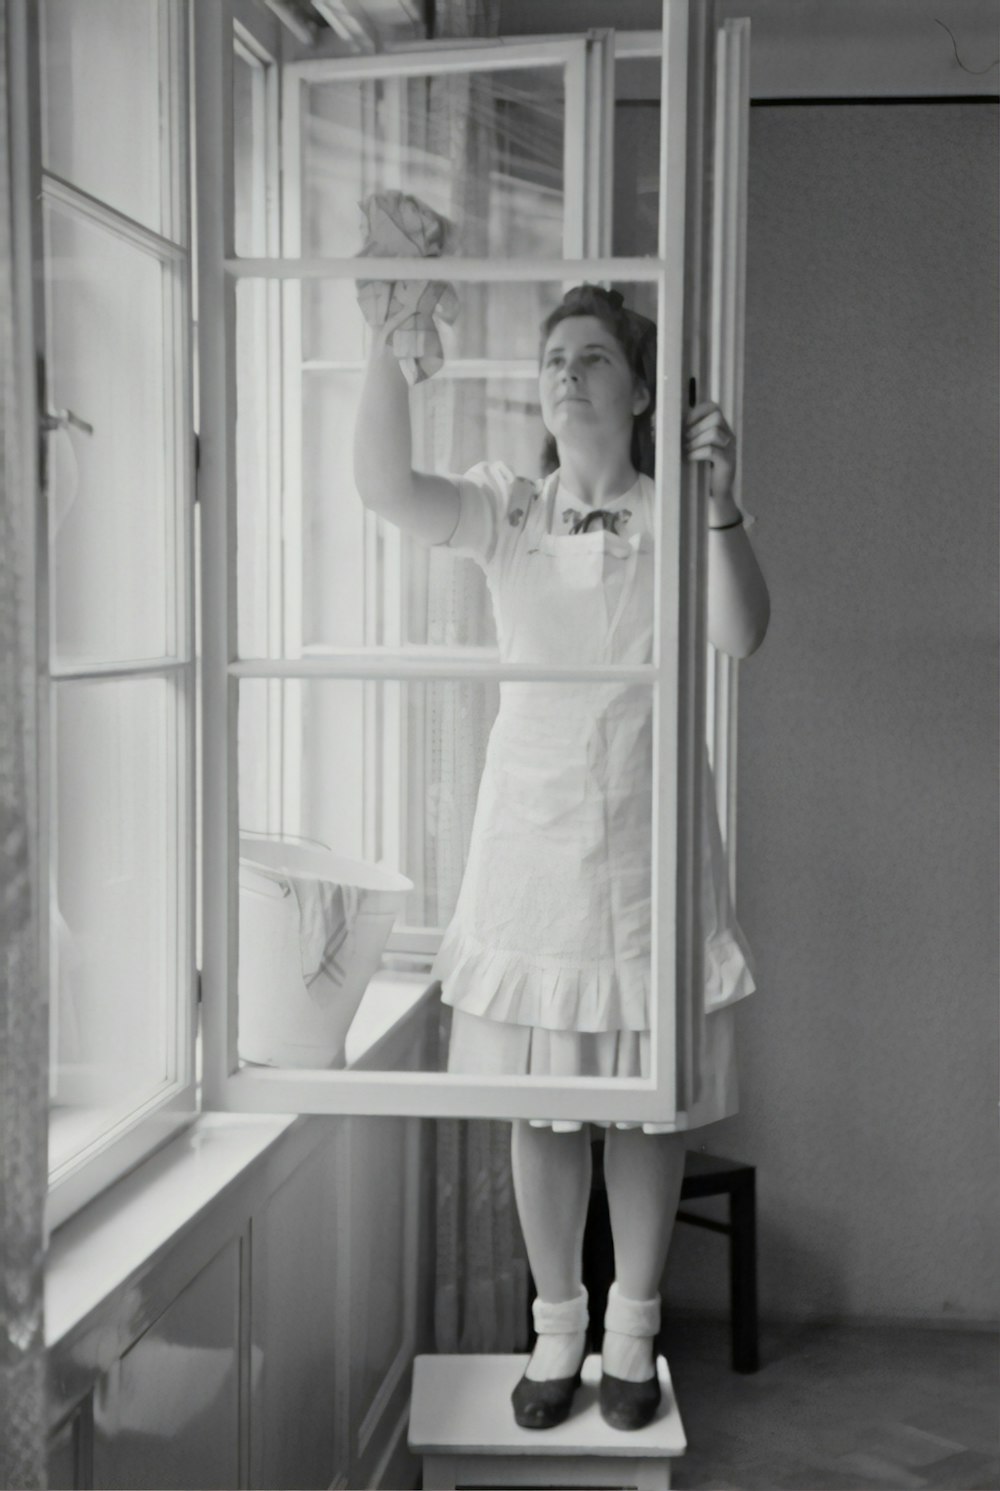 fotografia in scala di grigi della donna che pulisce la finestra di vetro